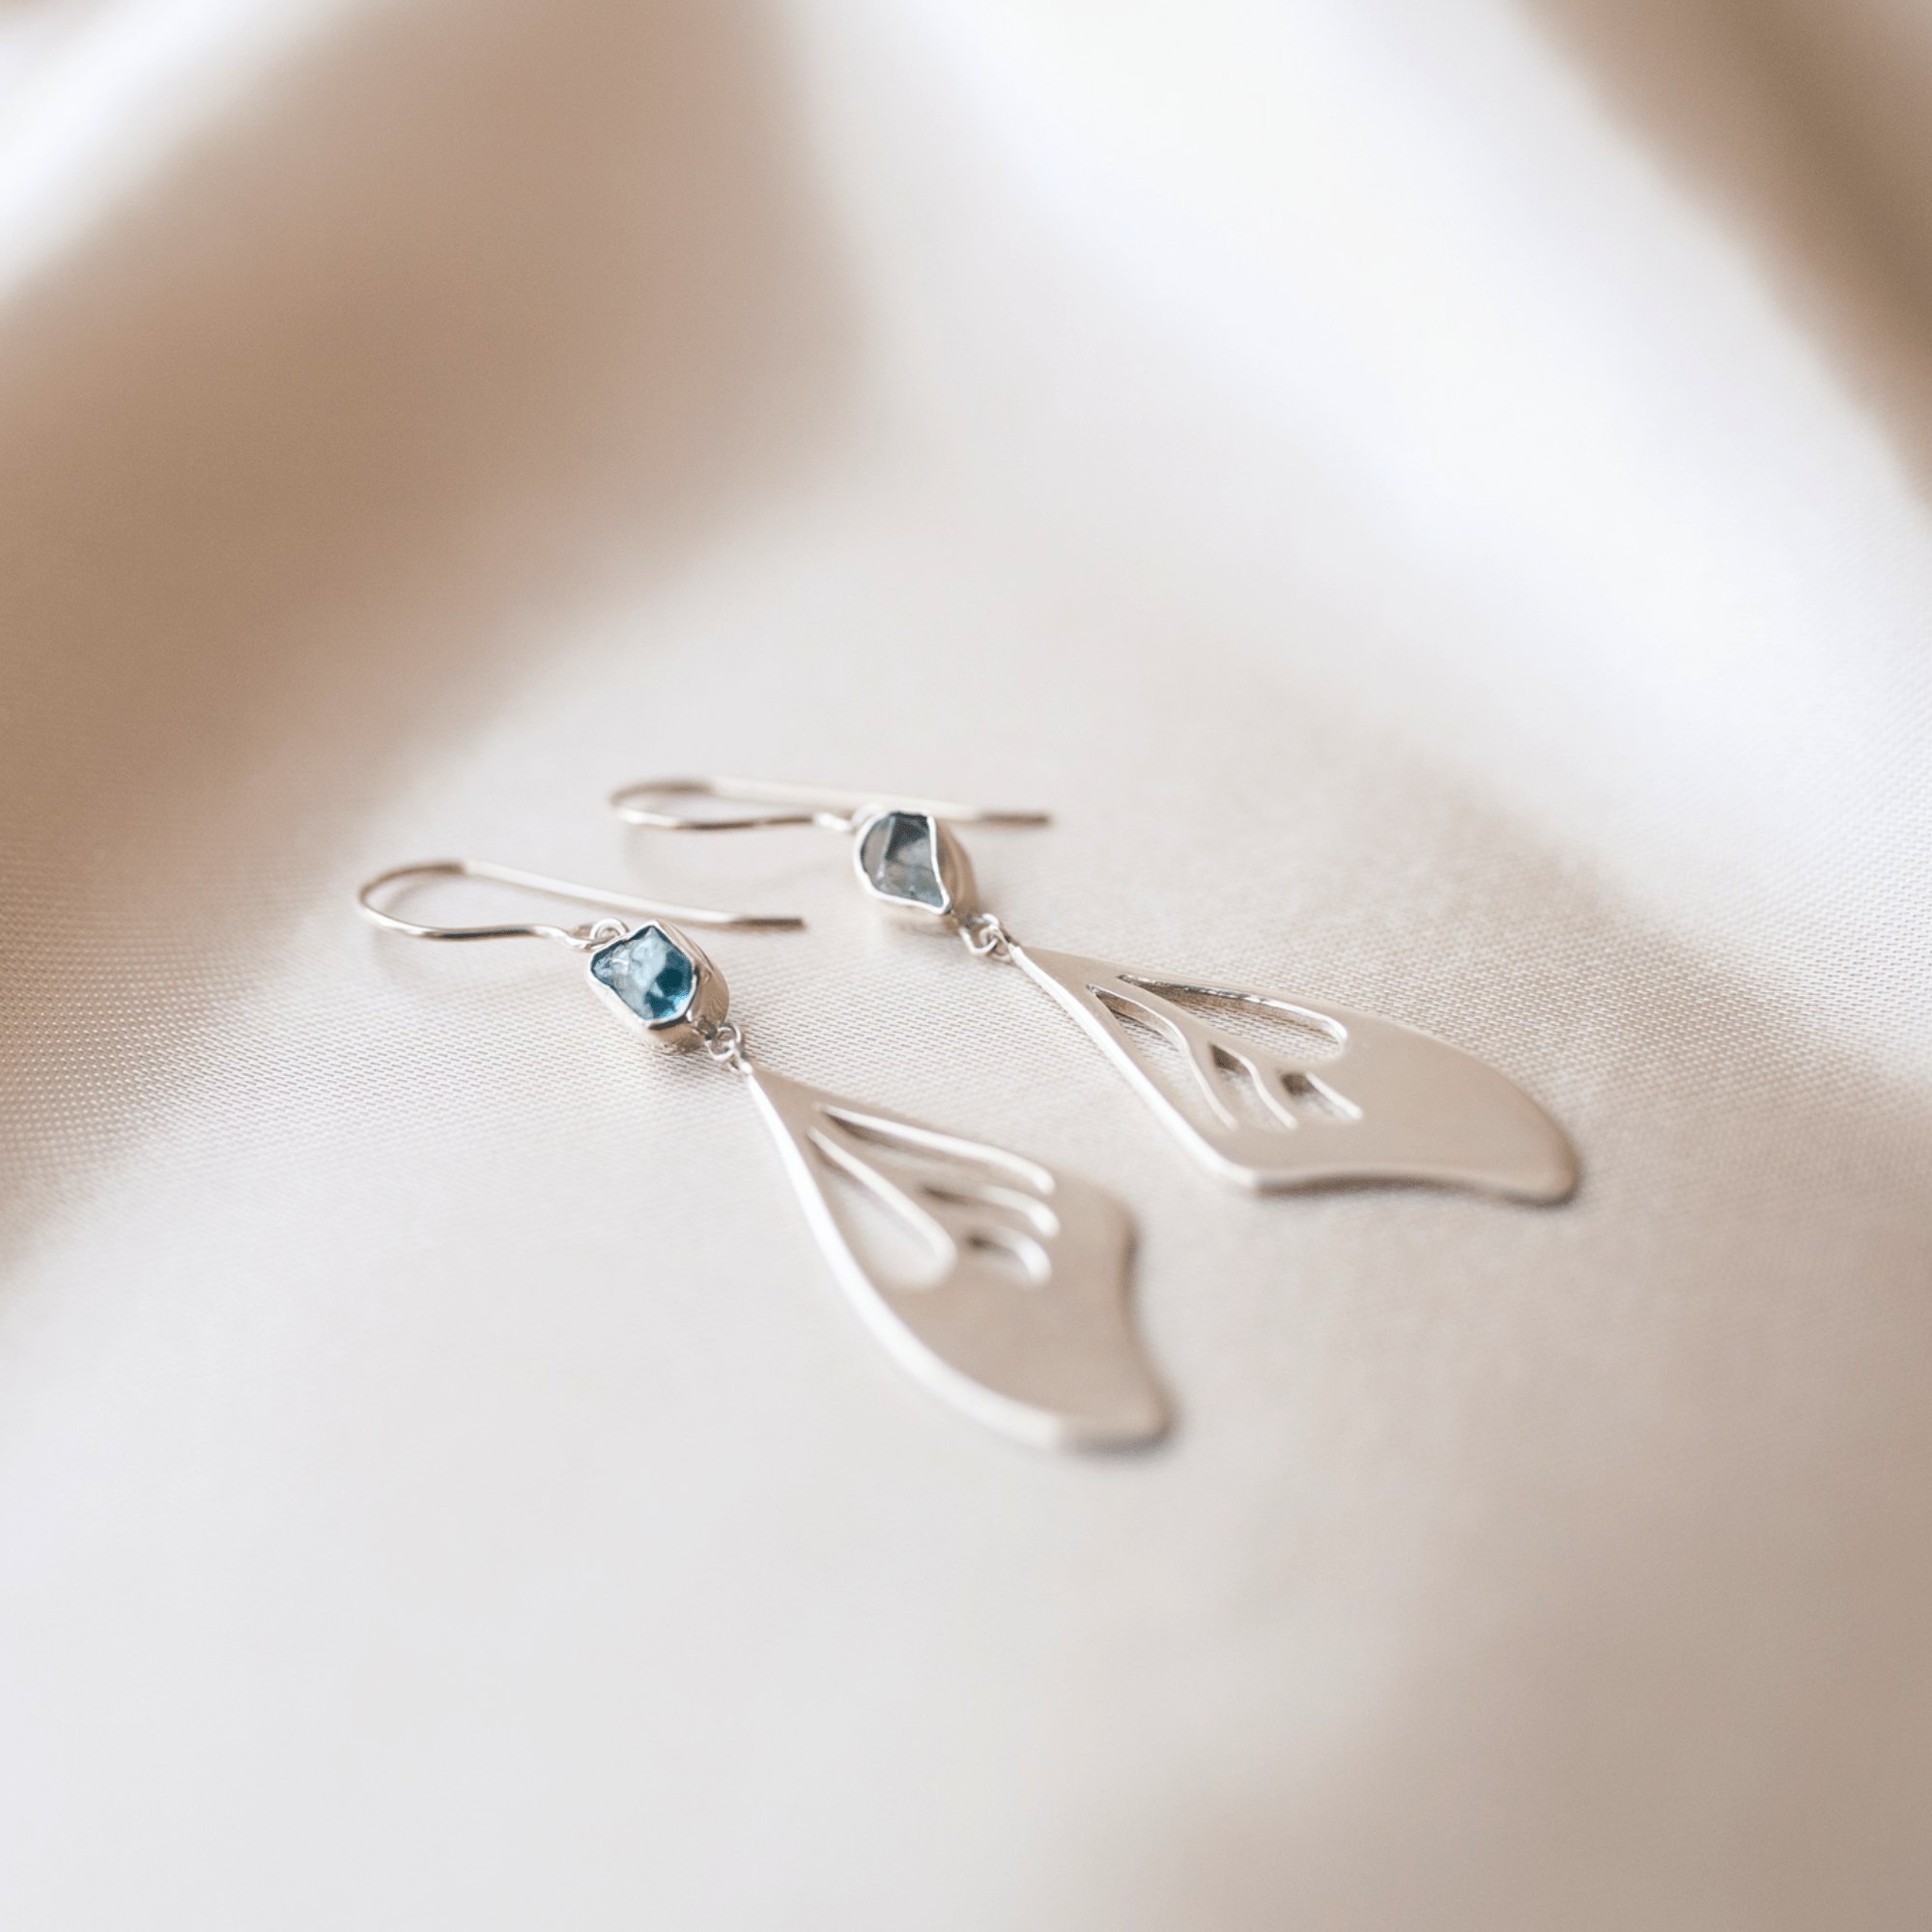 Jewelry Evolution Earrings Elegance Butterfly Wing Earrings with Blue Zircon